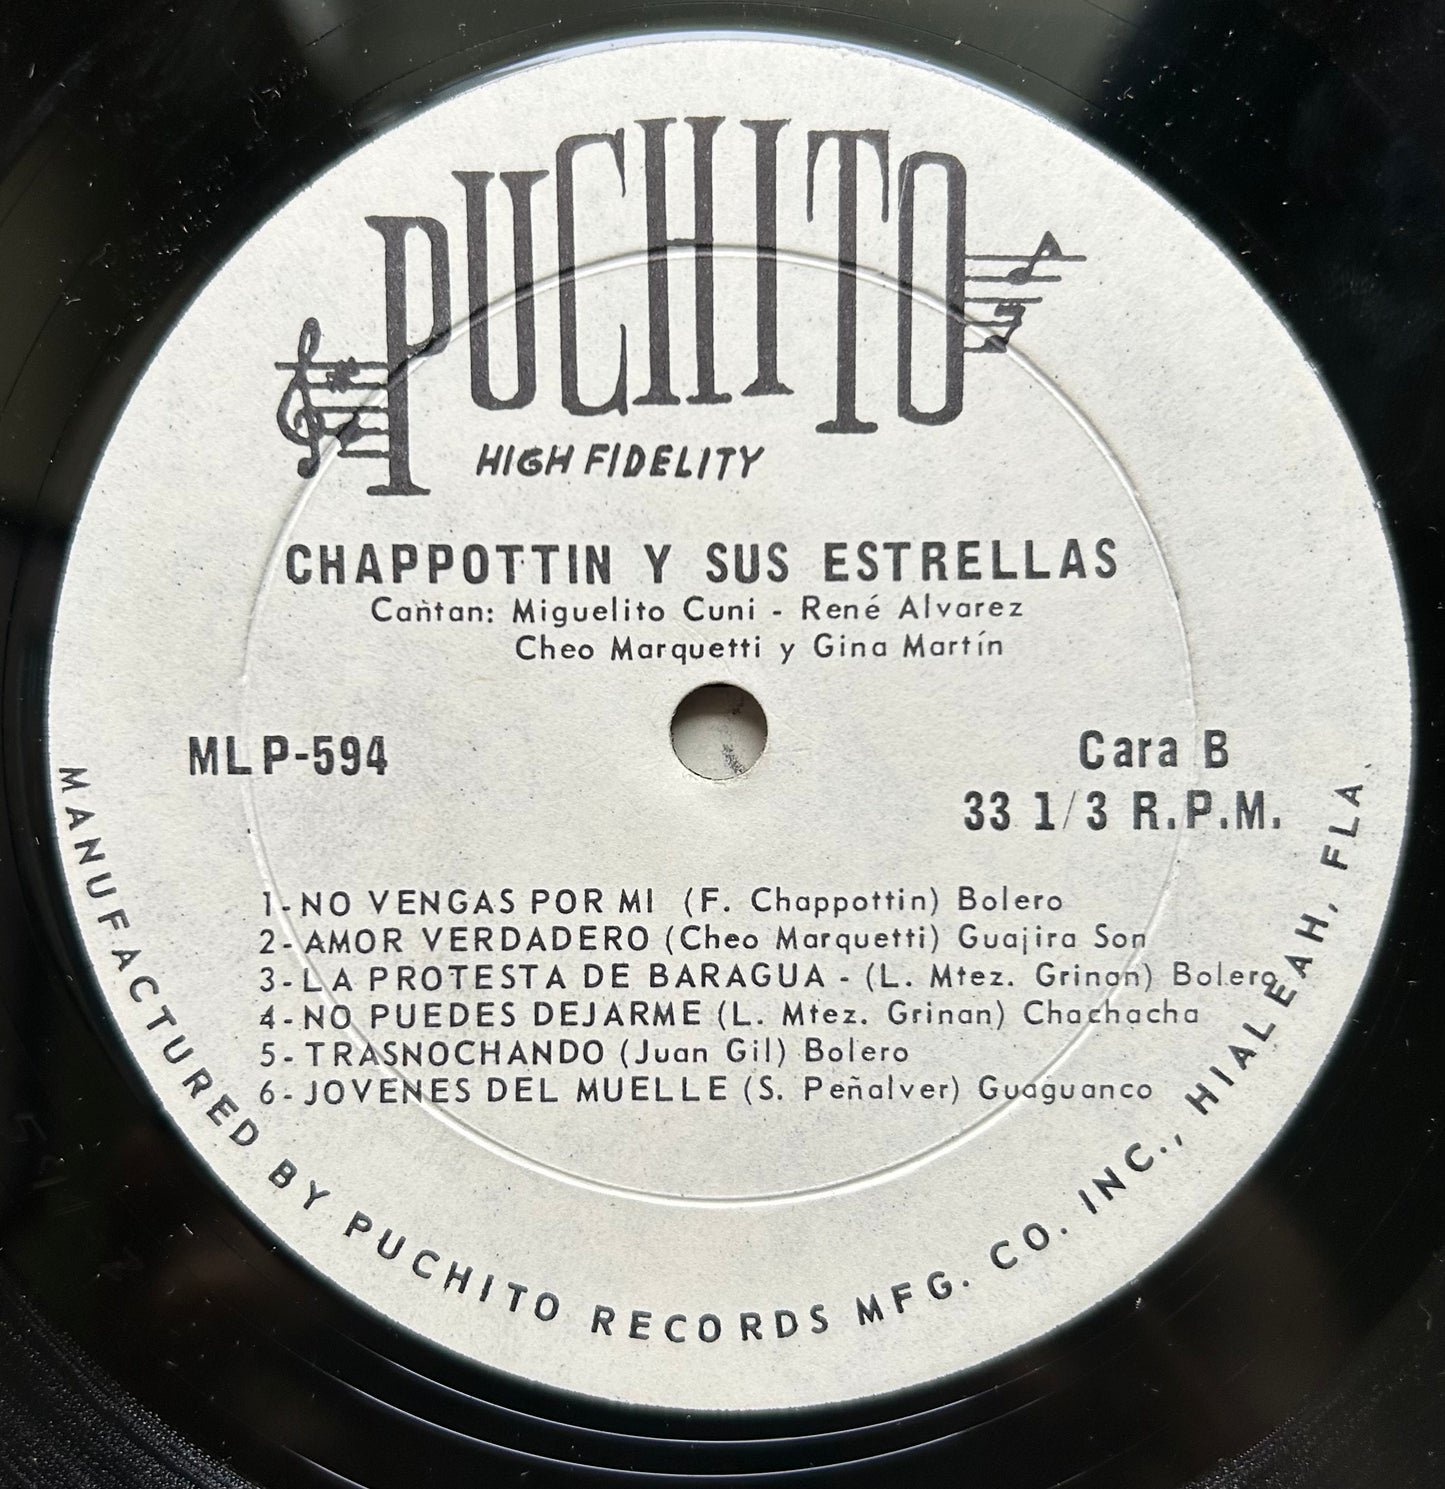 Chappottin y Sus Estrellas - 1967 Puchito Salsa